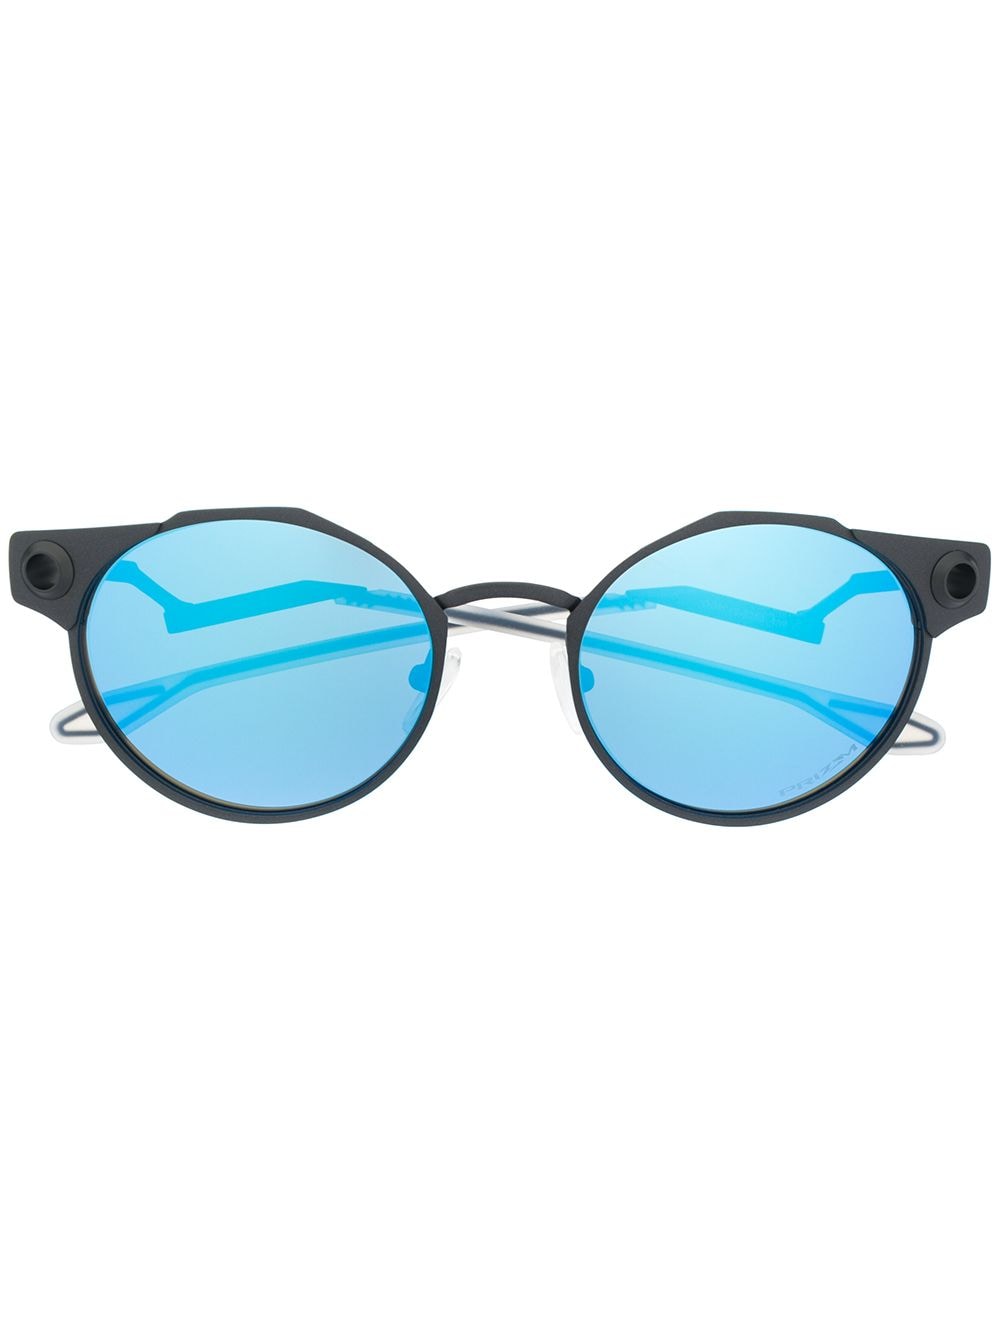 фото Oakley солнцезащитные очки deadbolt с зеркальными линзами